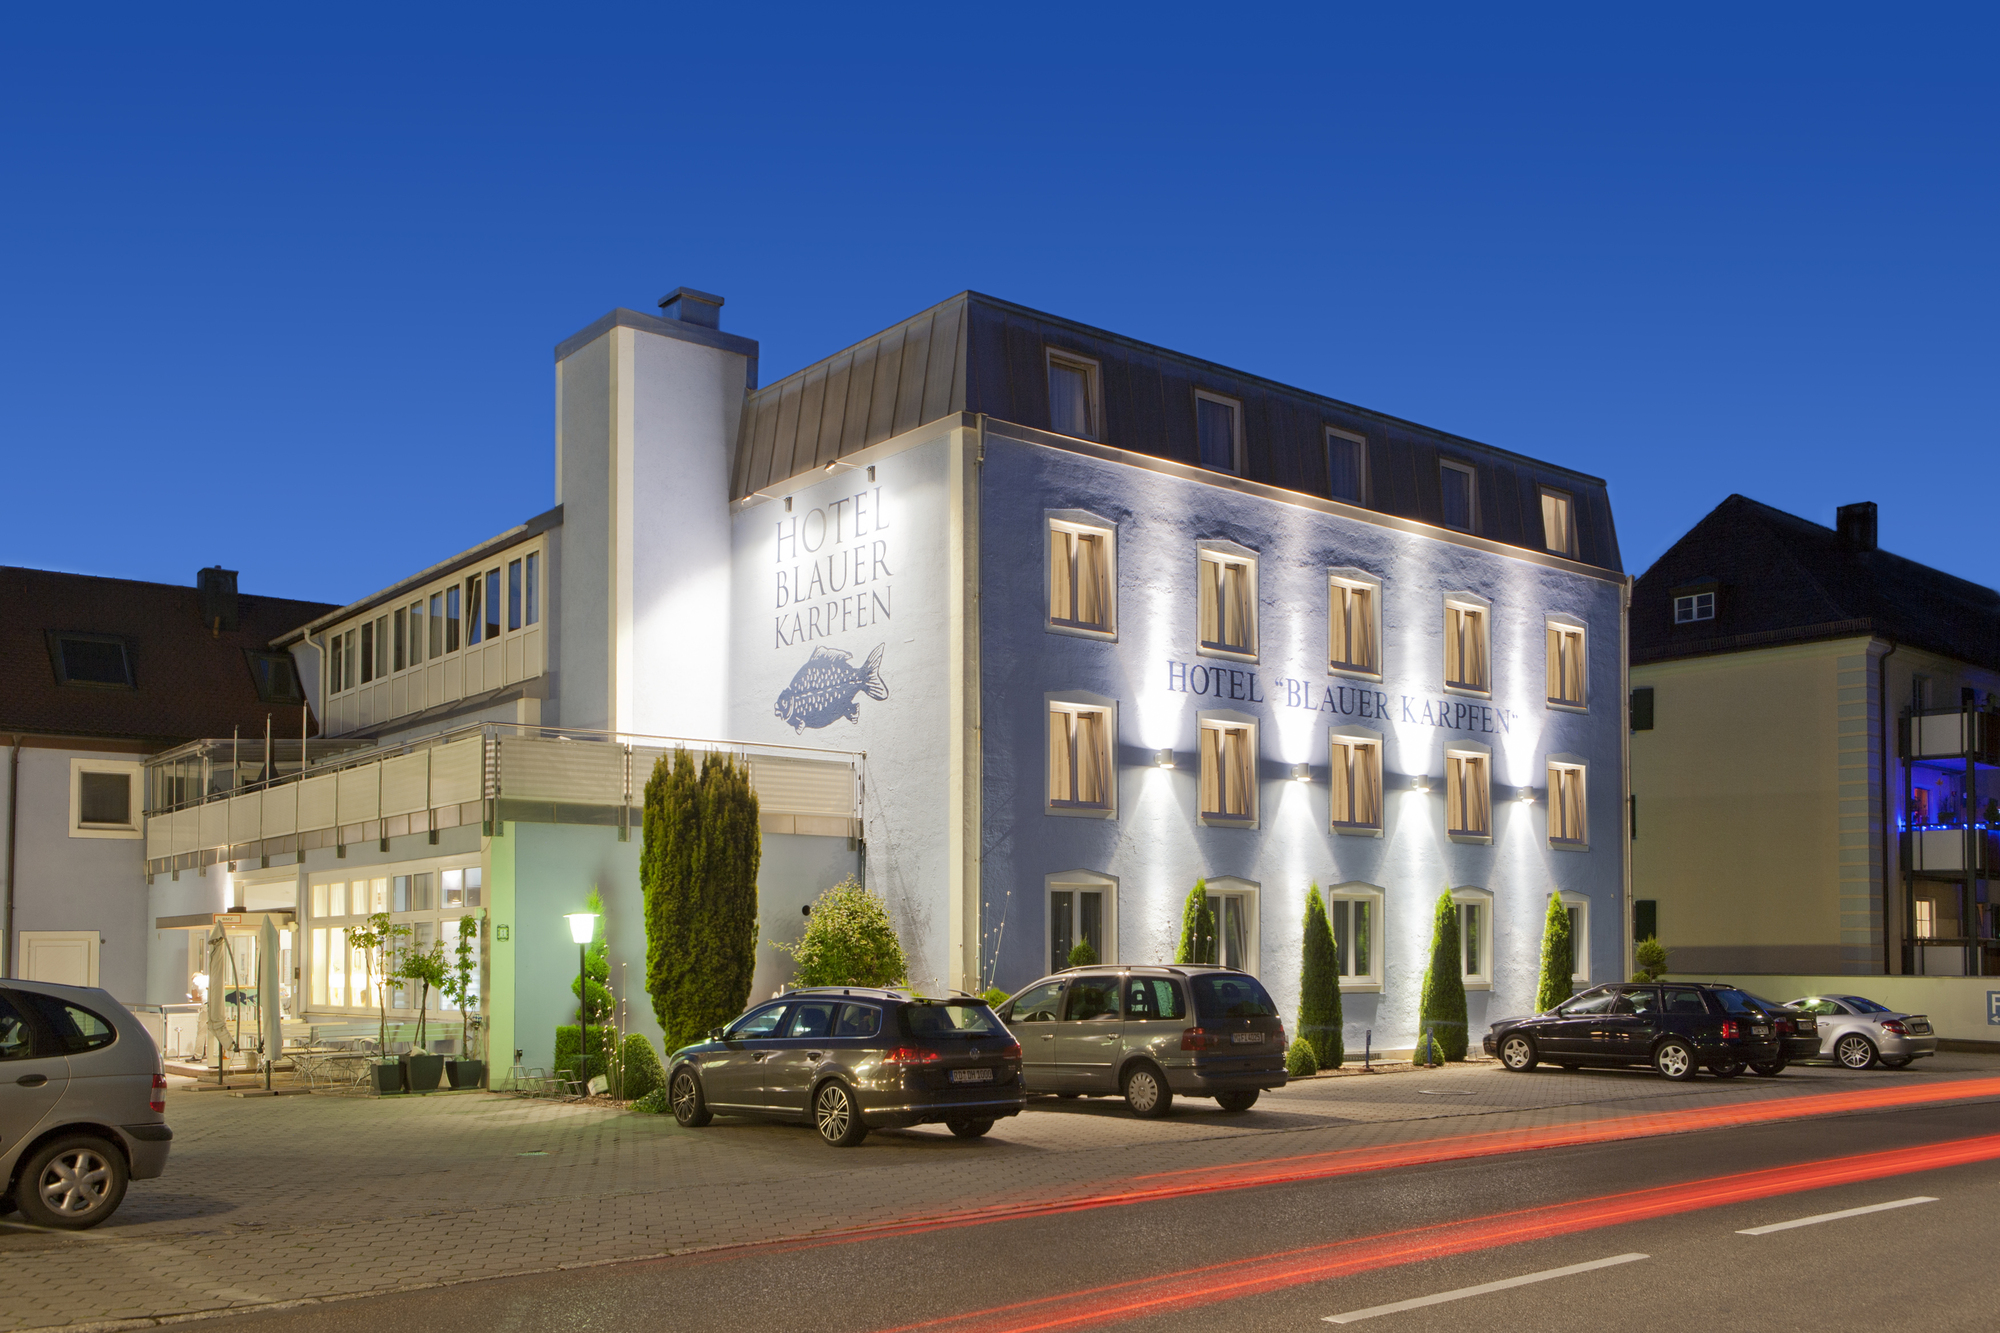 Das Konzert Hotel blauer Karpfen, Oberschleißheim bei München